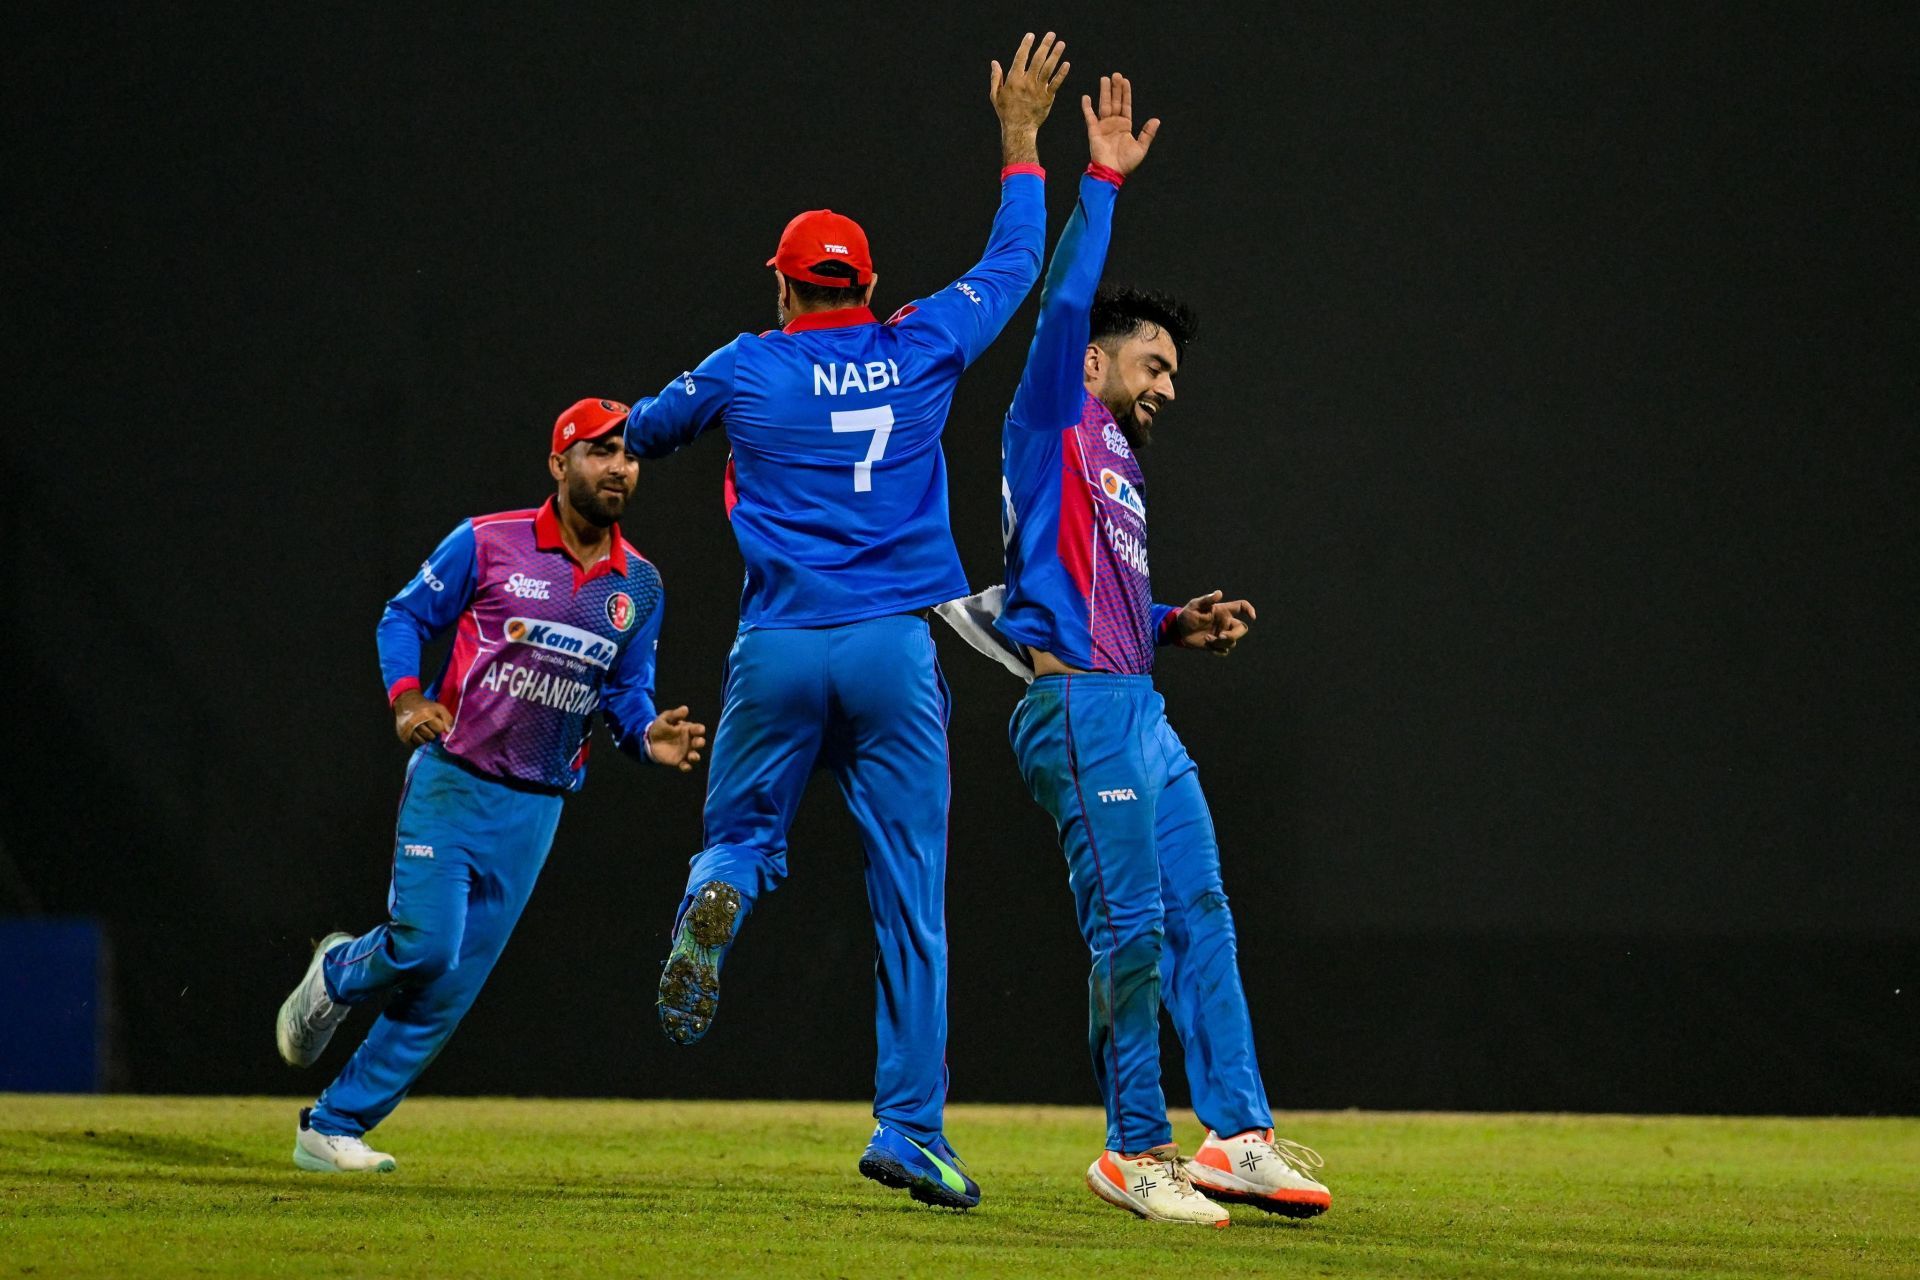 Rashid Khan and Mohammad Nabi celebrate a wicket. (Credits: Twitter)